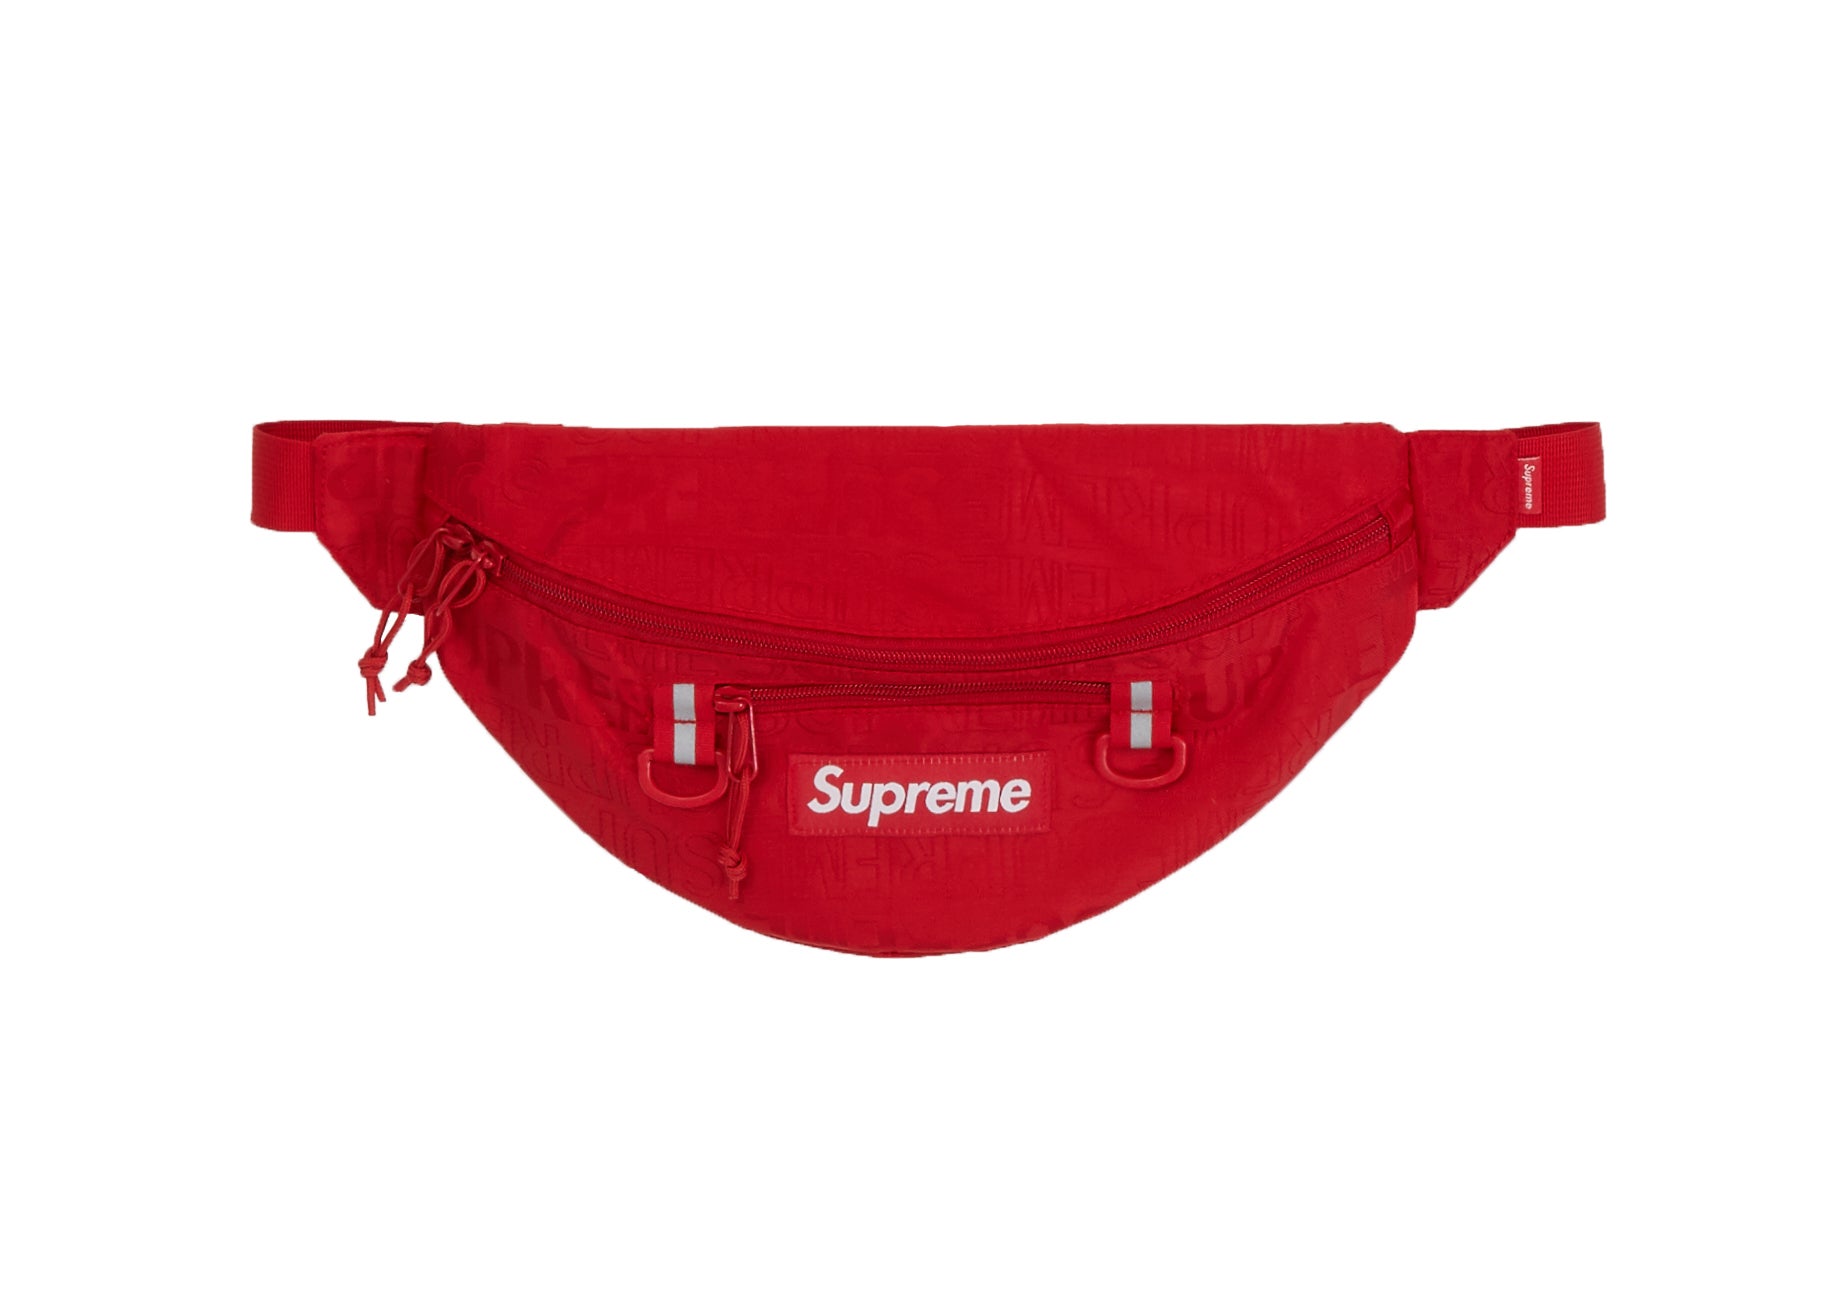 Supreme + Red Waist Bag